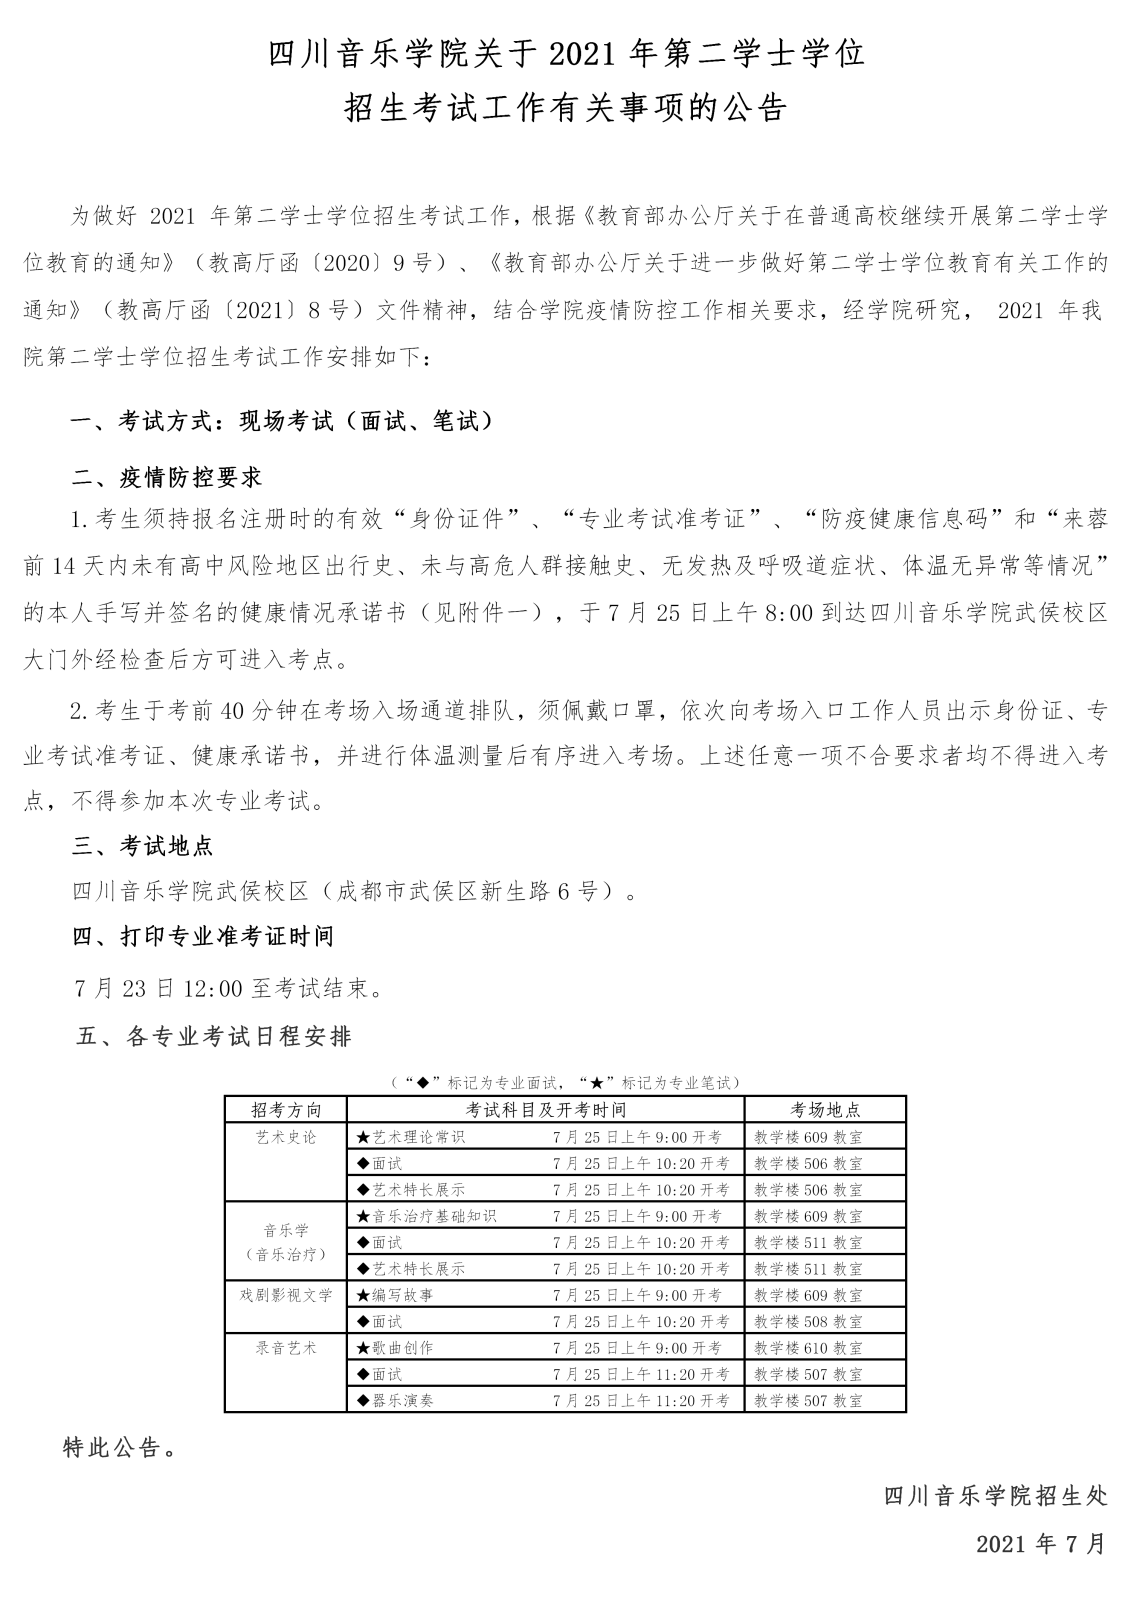 四川音乐学院关于2021年第二学士学位招生考试工作有关事项的公告_01.png